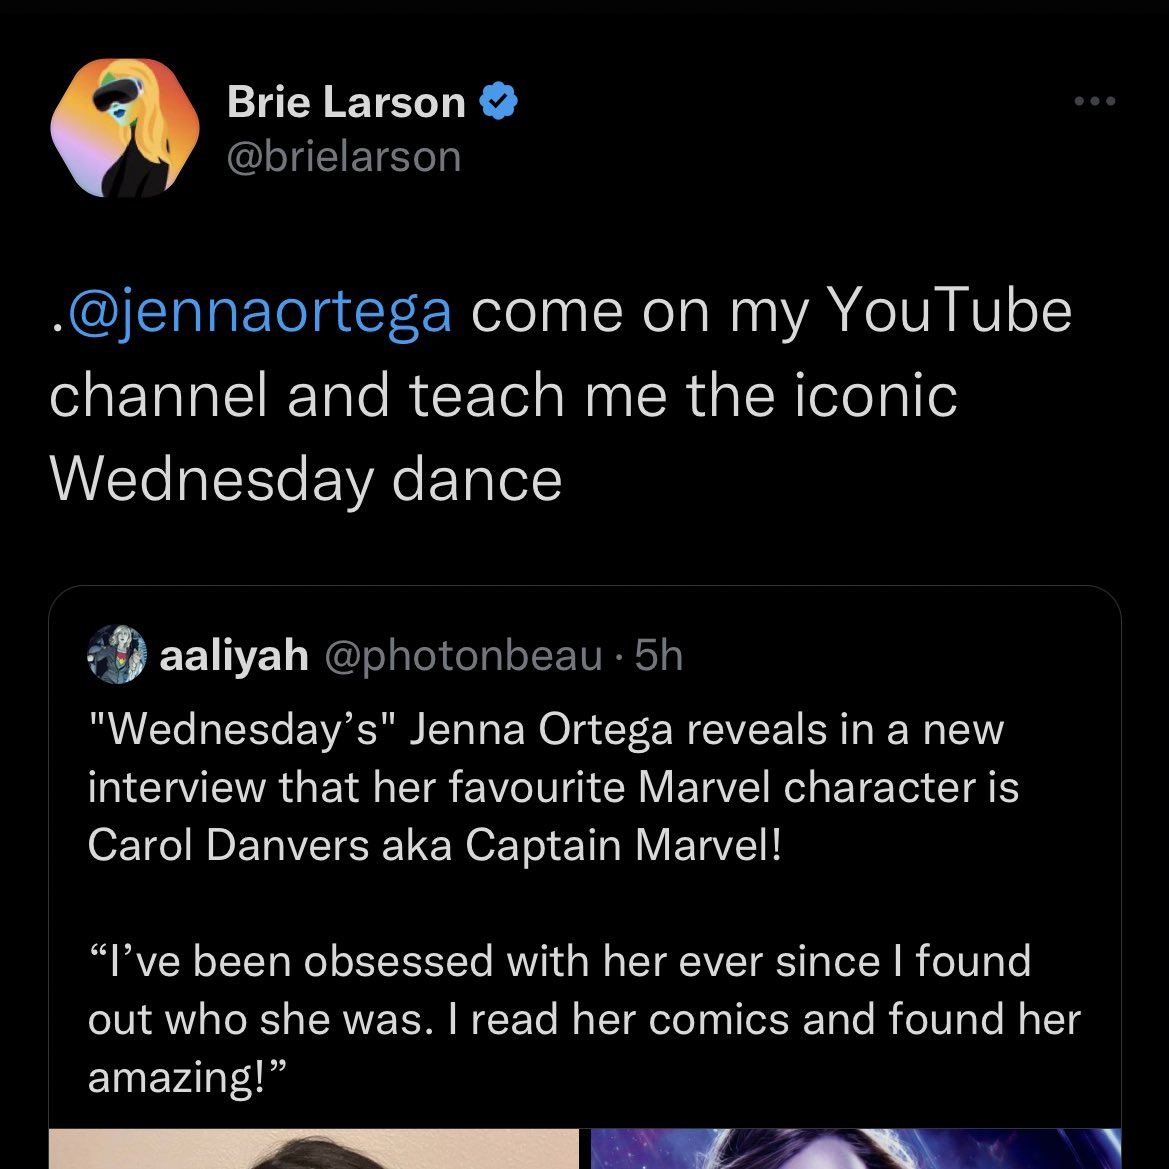 The false tweet claiming Jenna Ortega's favorite MCU superhero is Captain Marvel. 